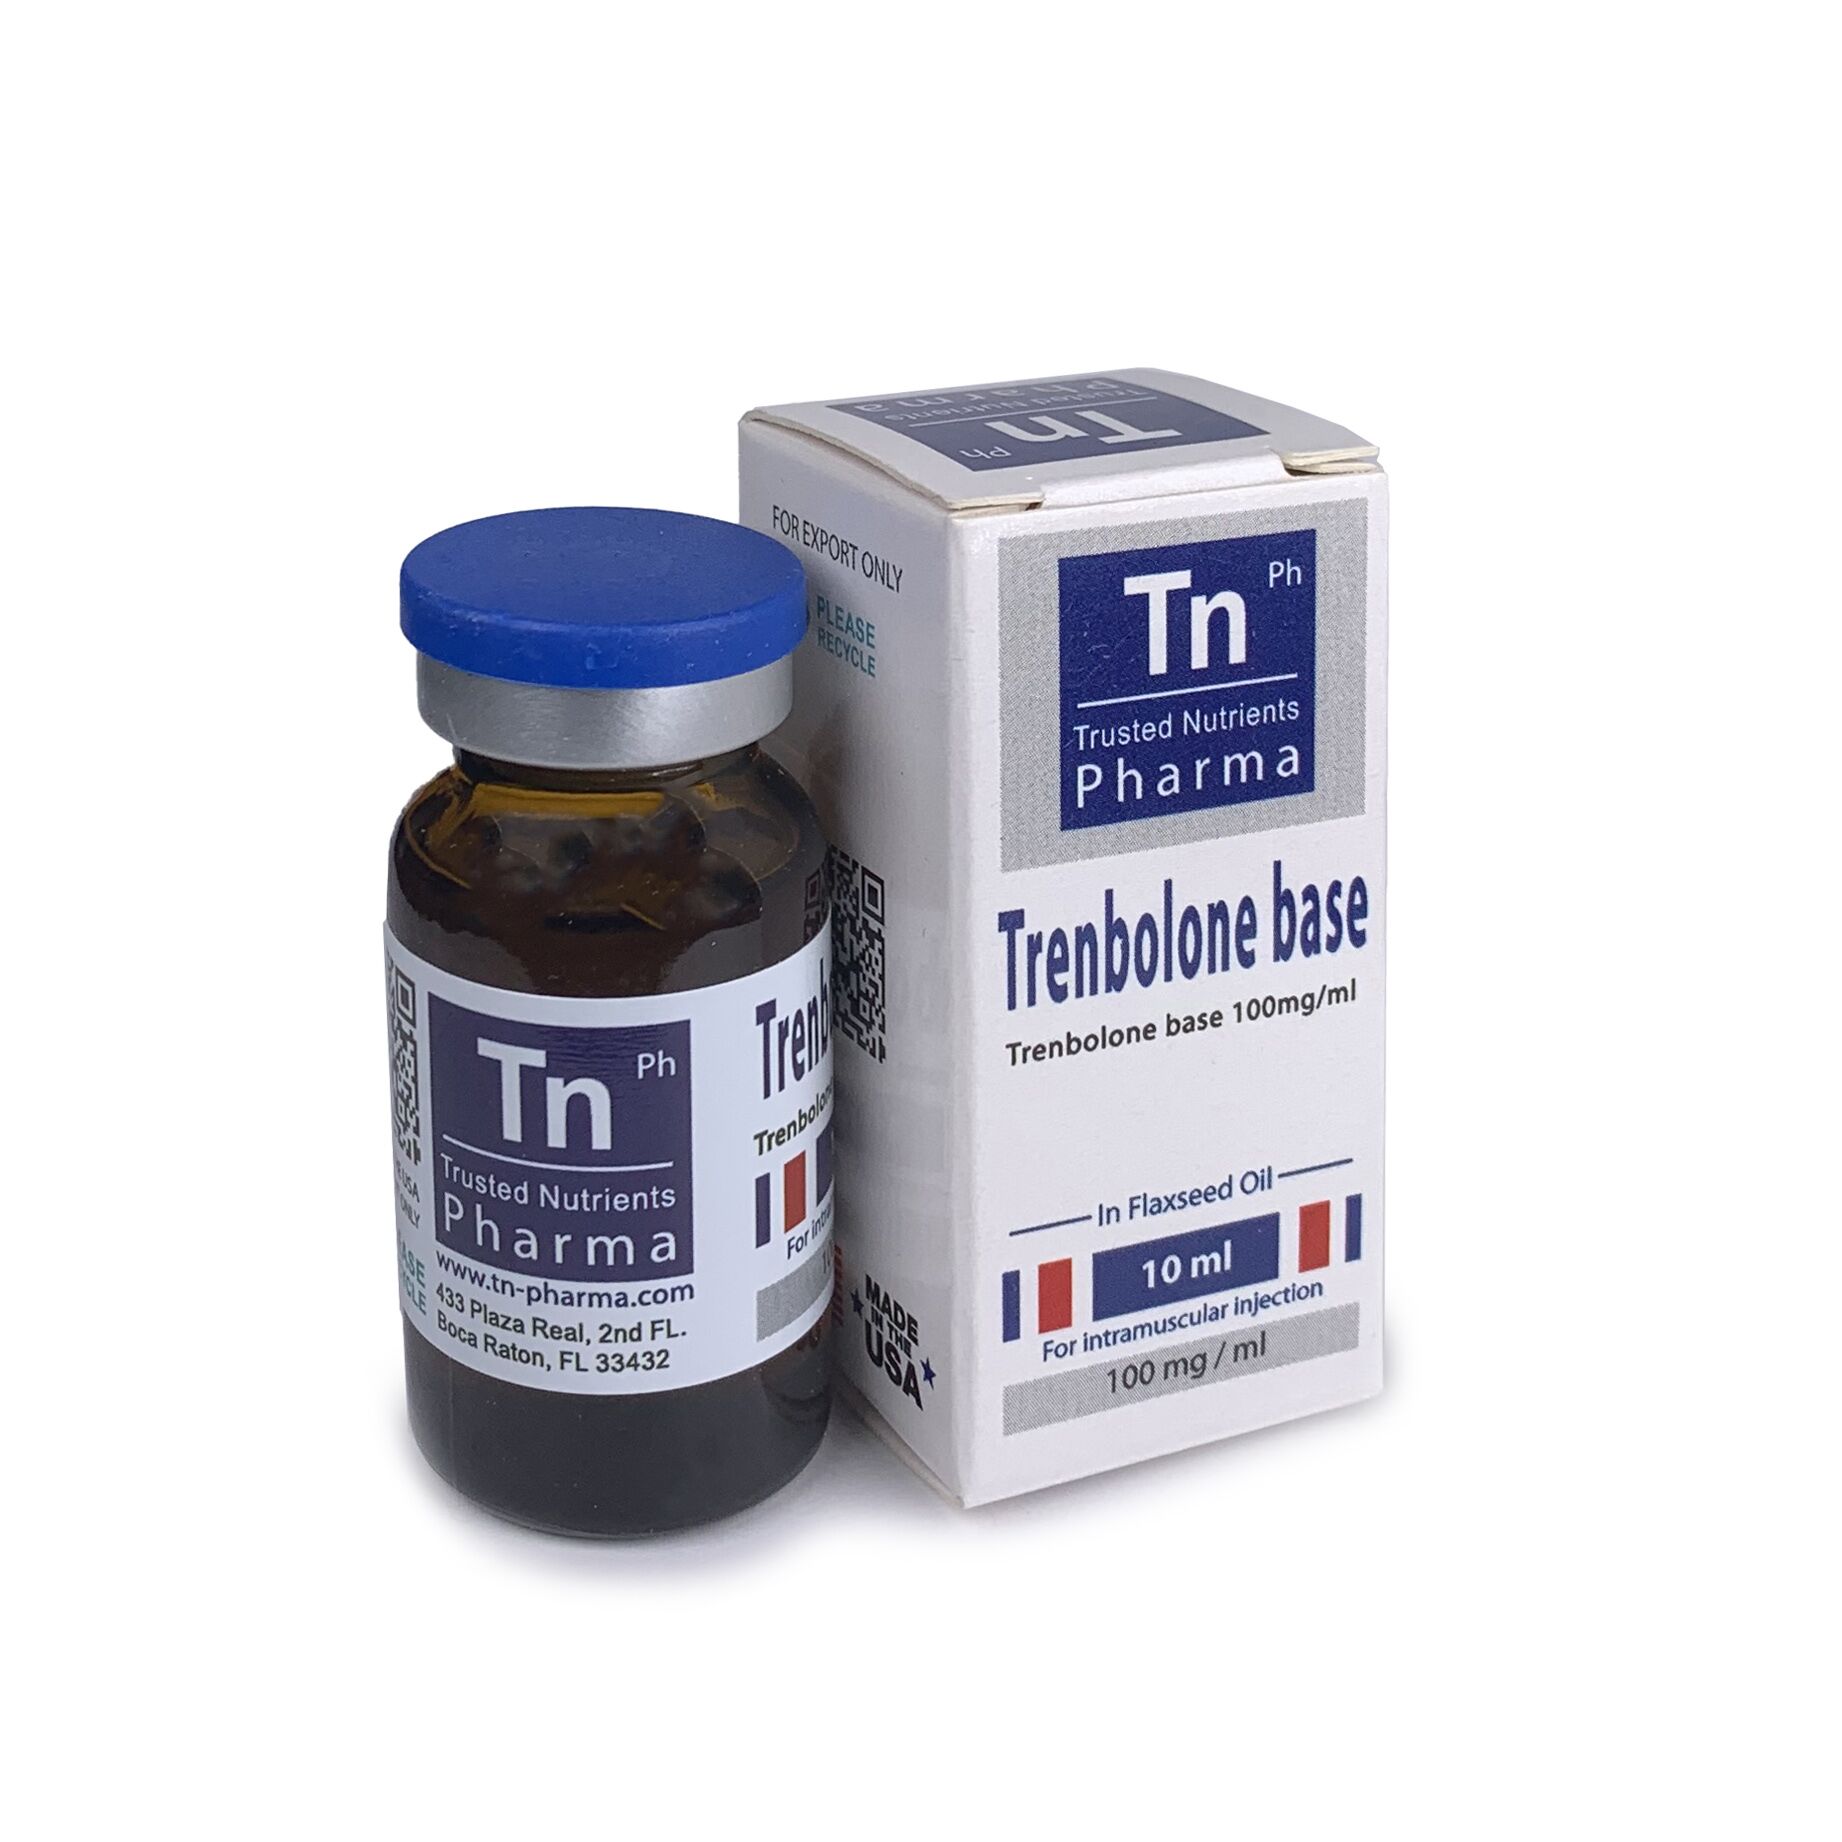 Тренболон база - TN Pharma USA (1000 mg, 100 mg/ml) - Zob.BG